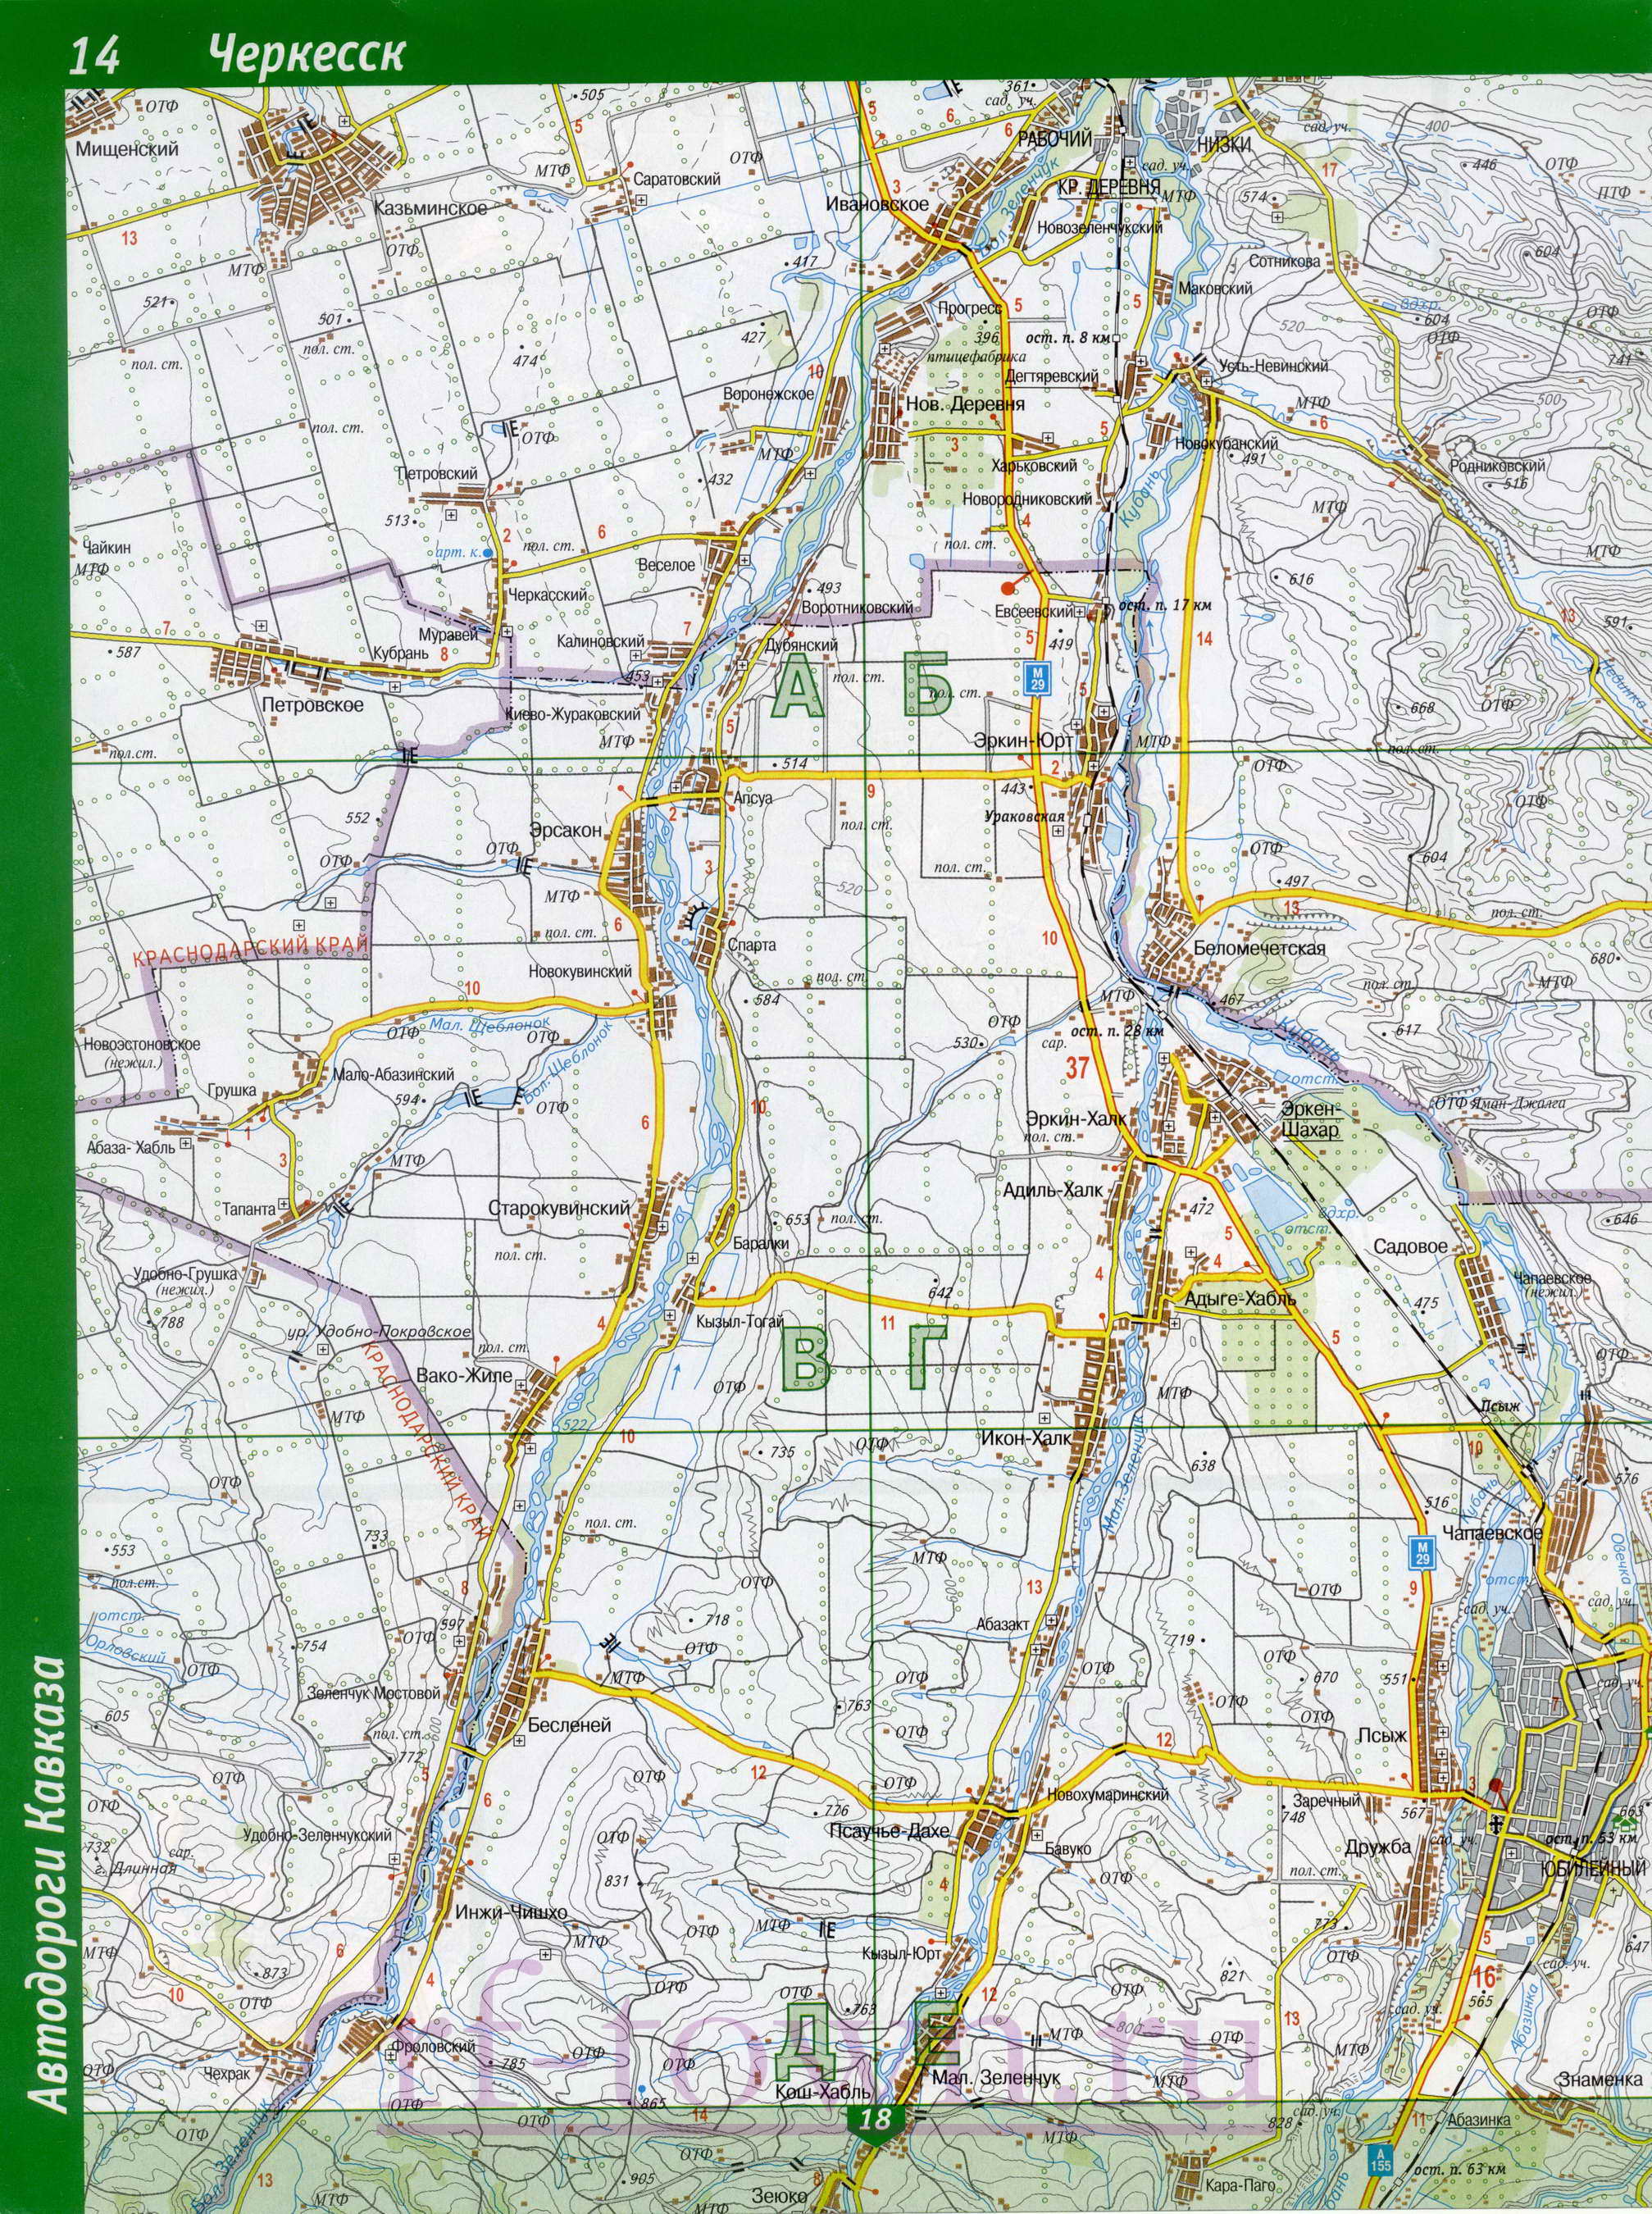 Карта Карачаево-Черкесии. Республика Карачаево-Черкесия - подробная топографическая карта масштаба 1см:2км, C0 - 